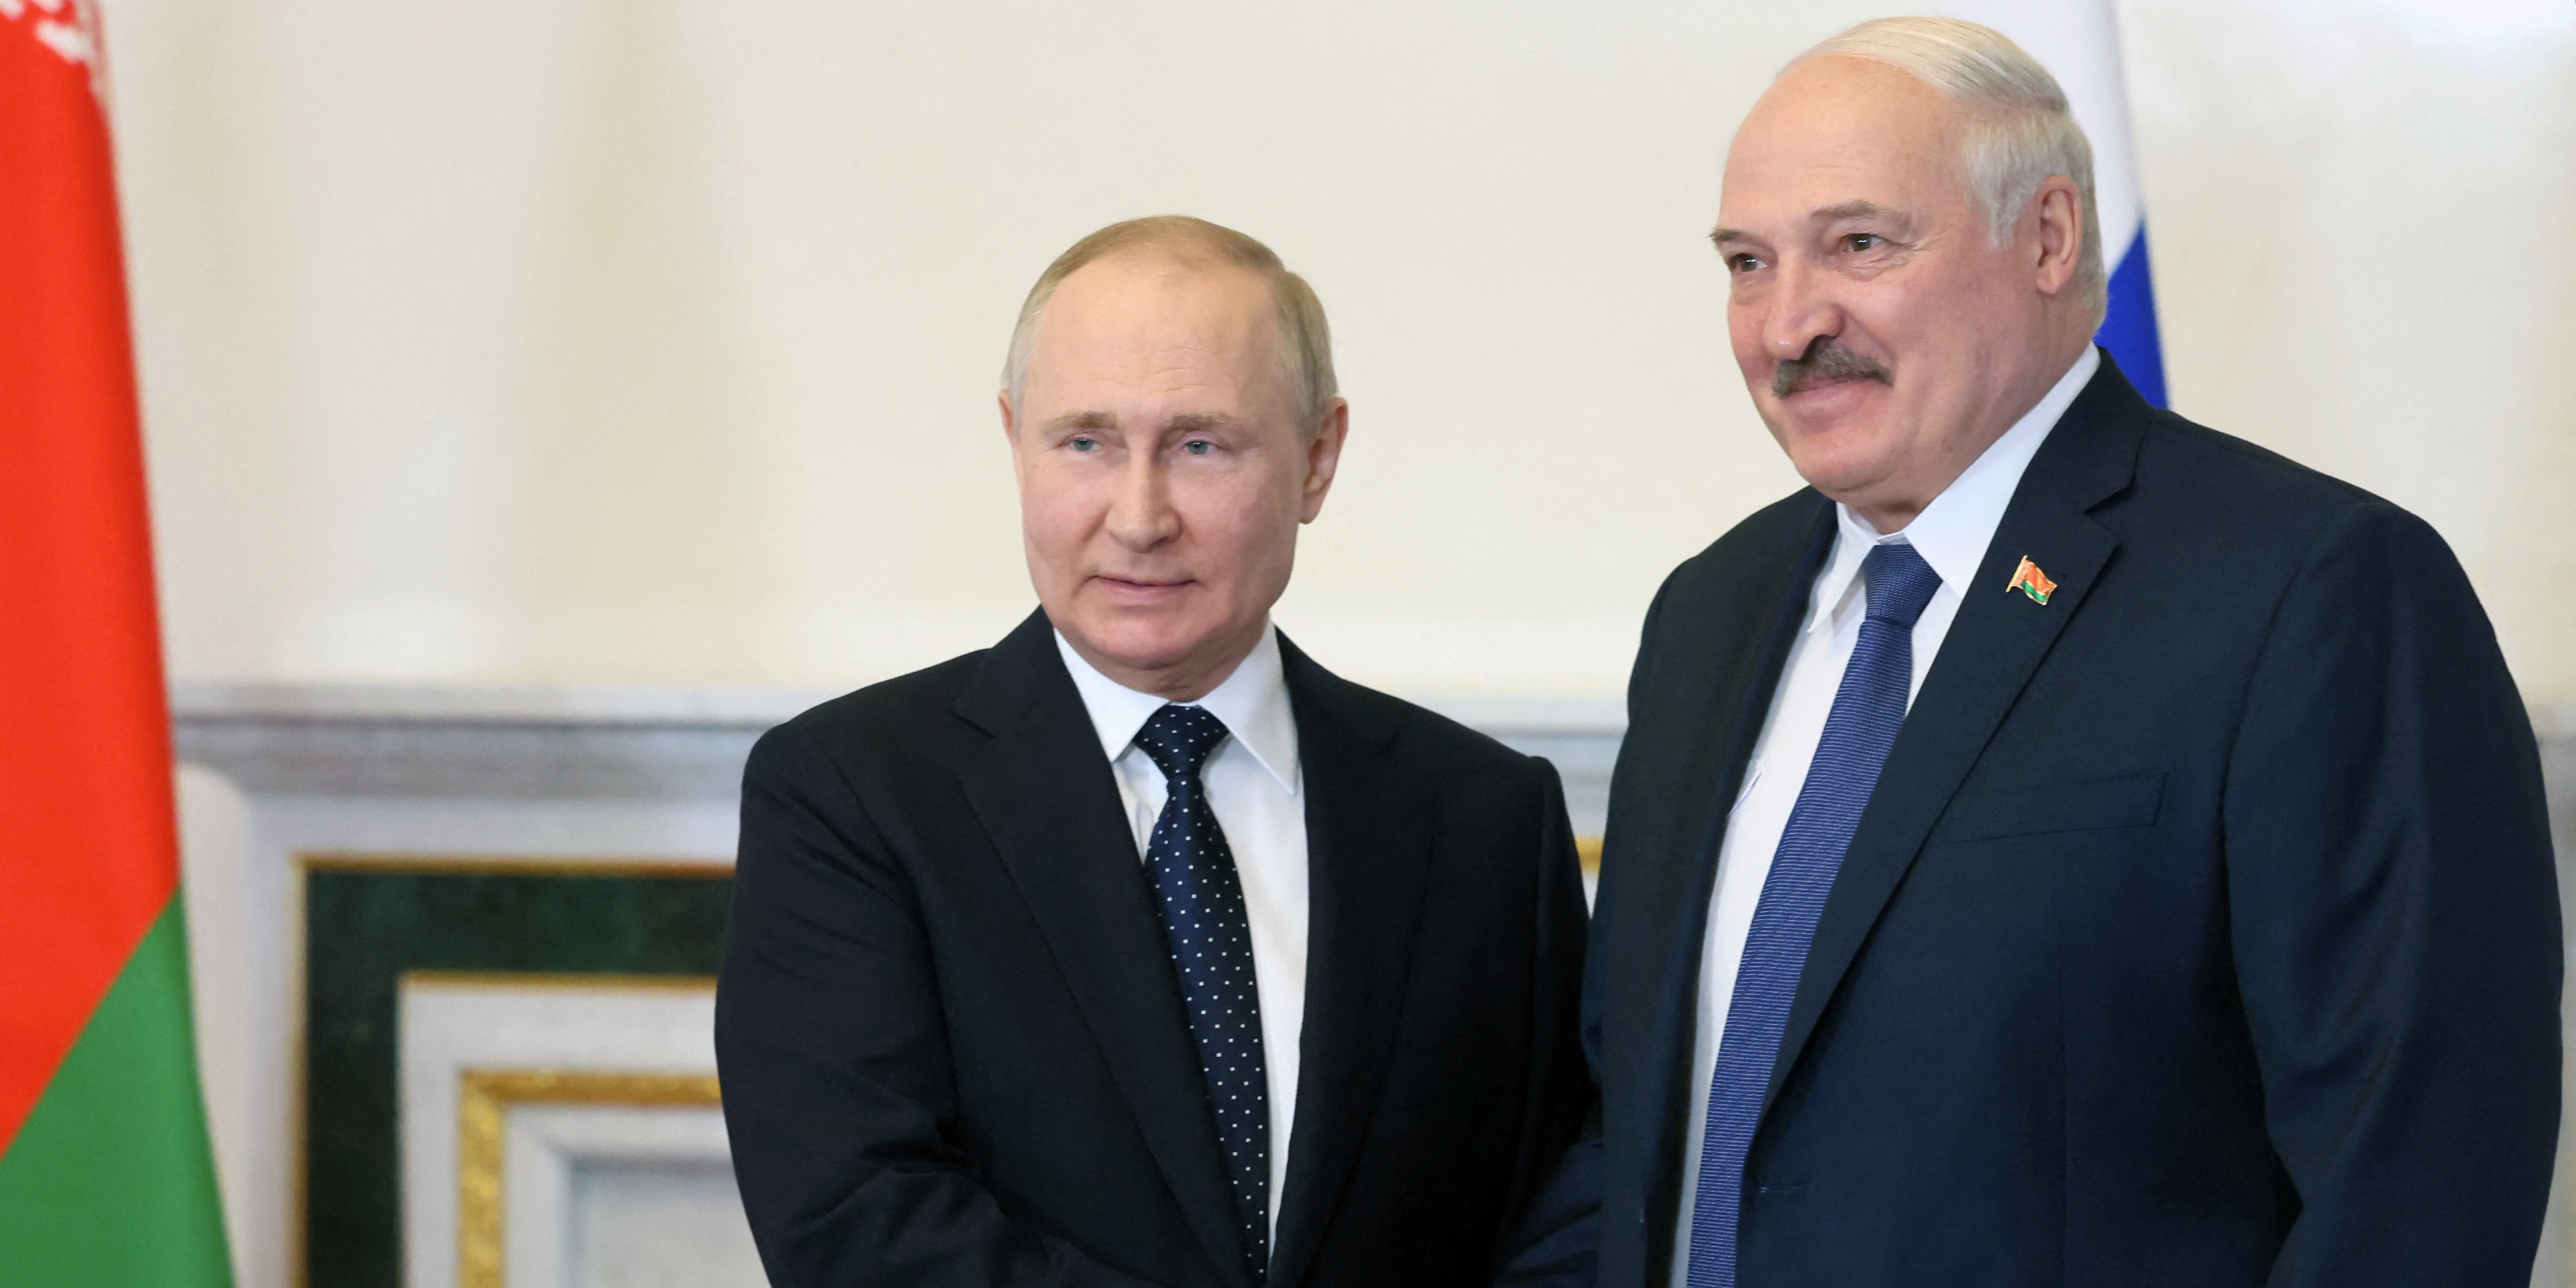 Armes nucléaires russes en Biélorussie : Minsk confirme, malgré les menaces de sanctions de l'UE